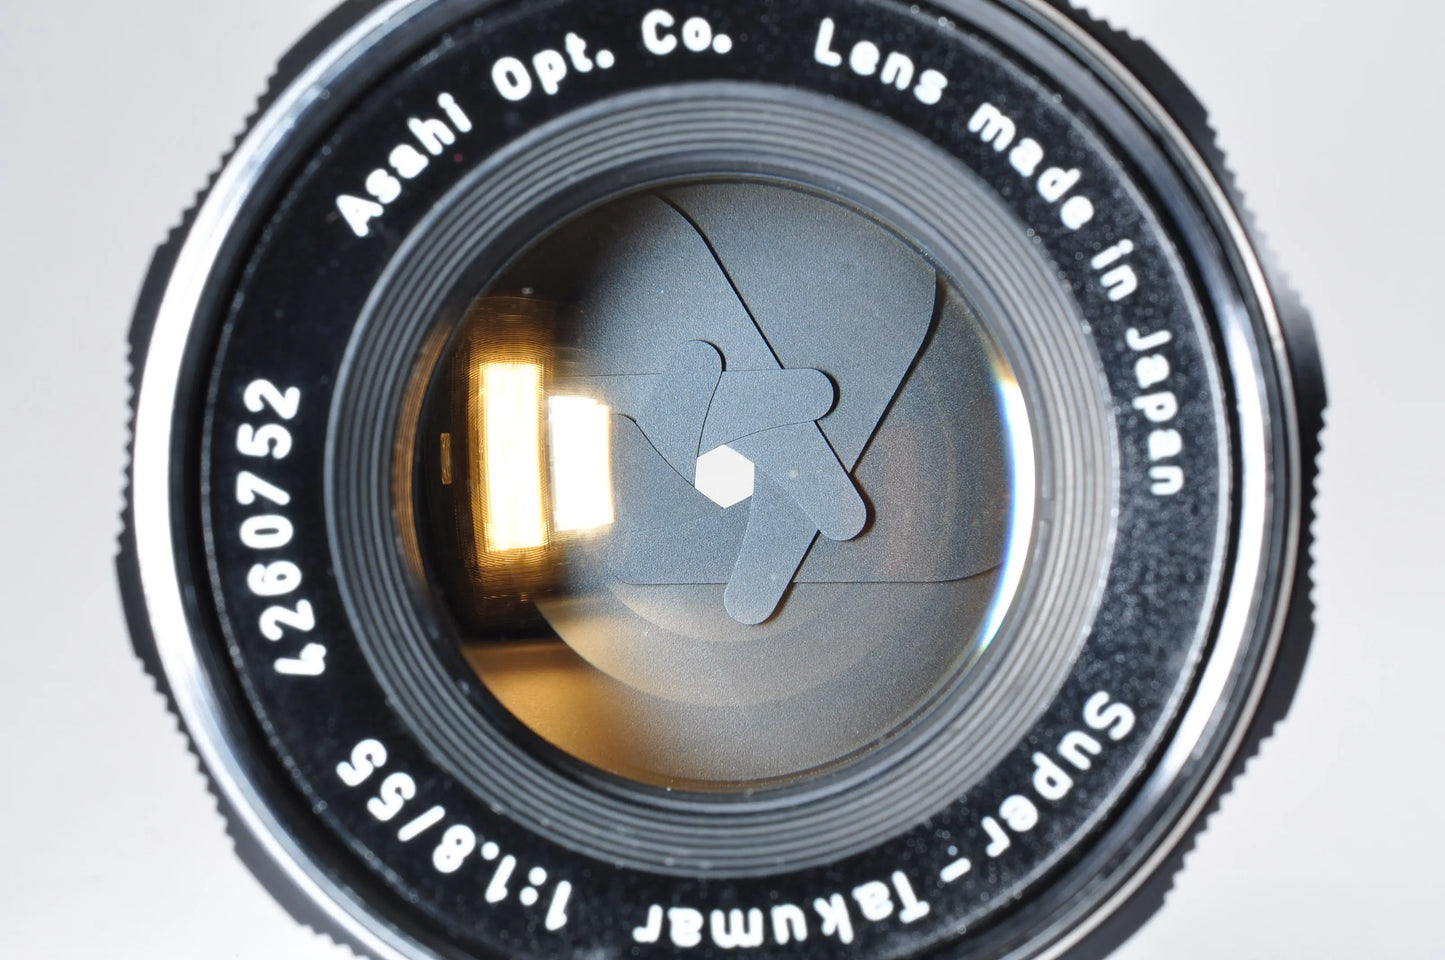 Pentax SL Black 35mm SLR Film Camera Super Takumar 55mm f1.8 From Japan #3063679